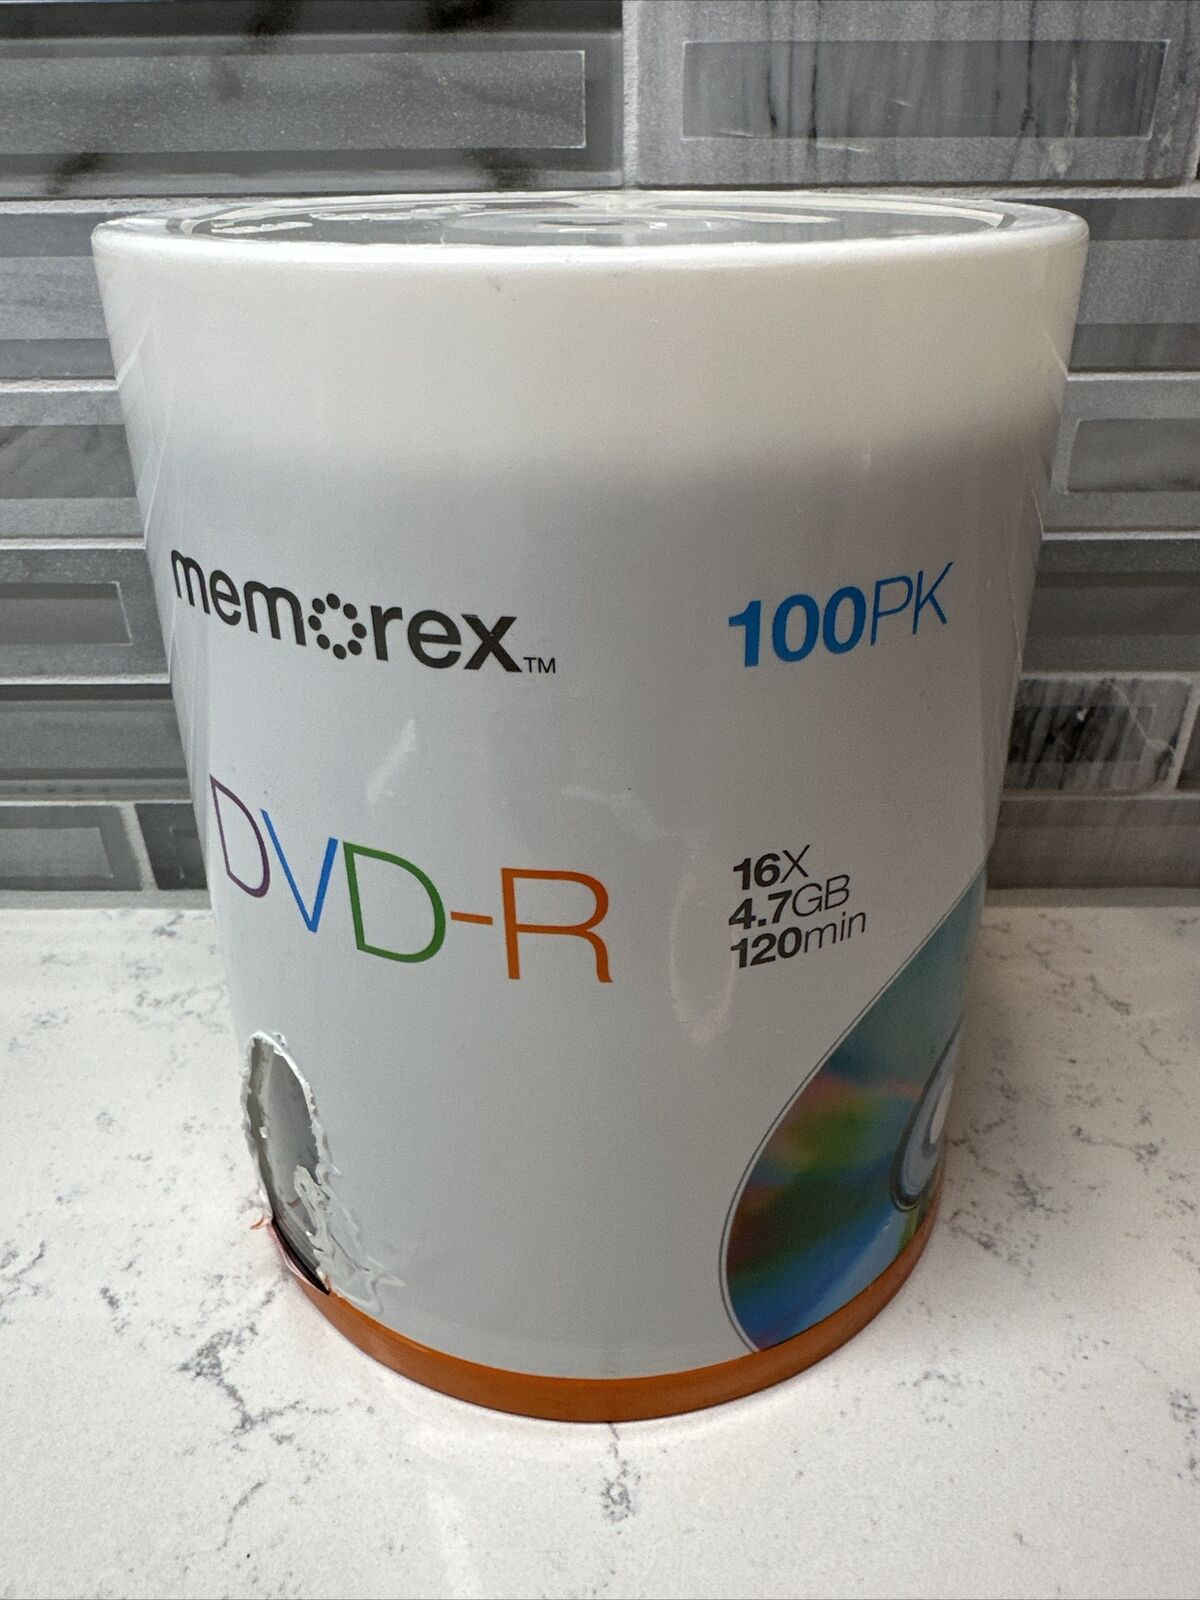 MEMOREX DVD-R = 16X - 4.7GB - 120 Minute 100 Pack Spindle SEALED PACKAGE